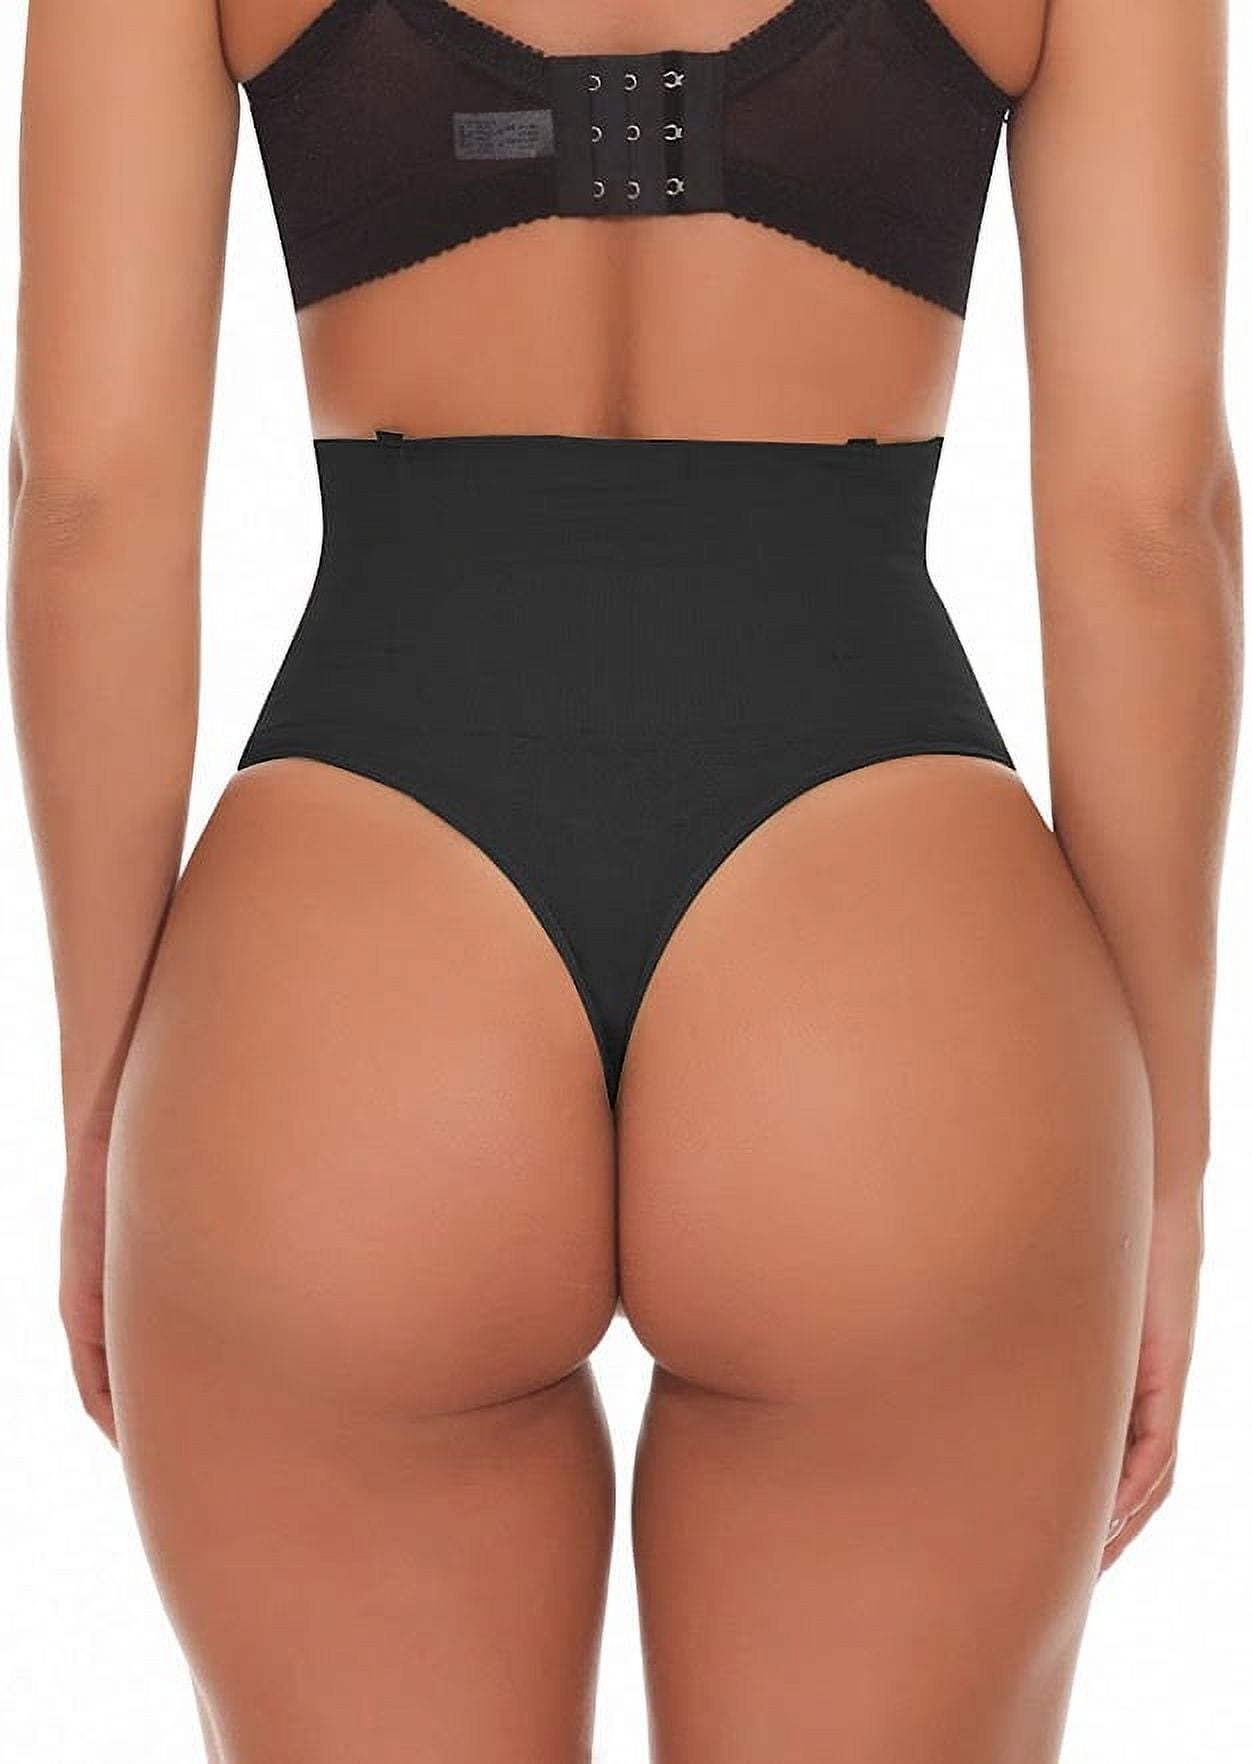 SEXYWG Shapewear Bodysuit Women Tummy Control Thong Body Shaper